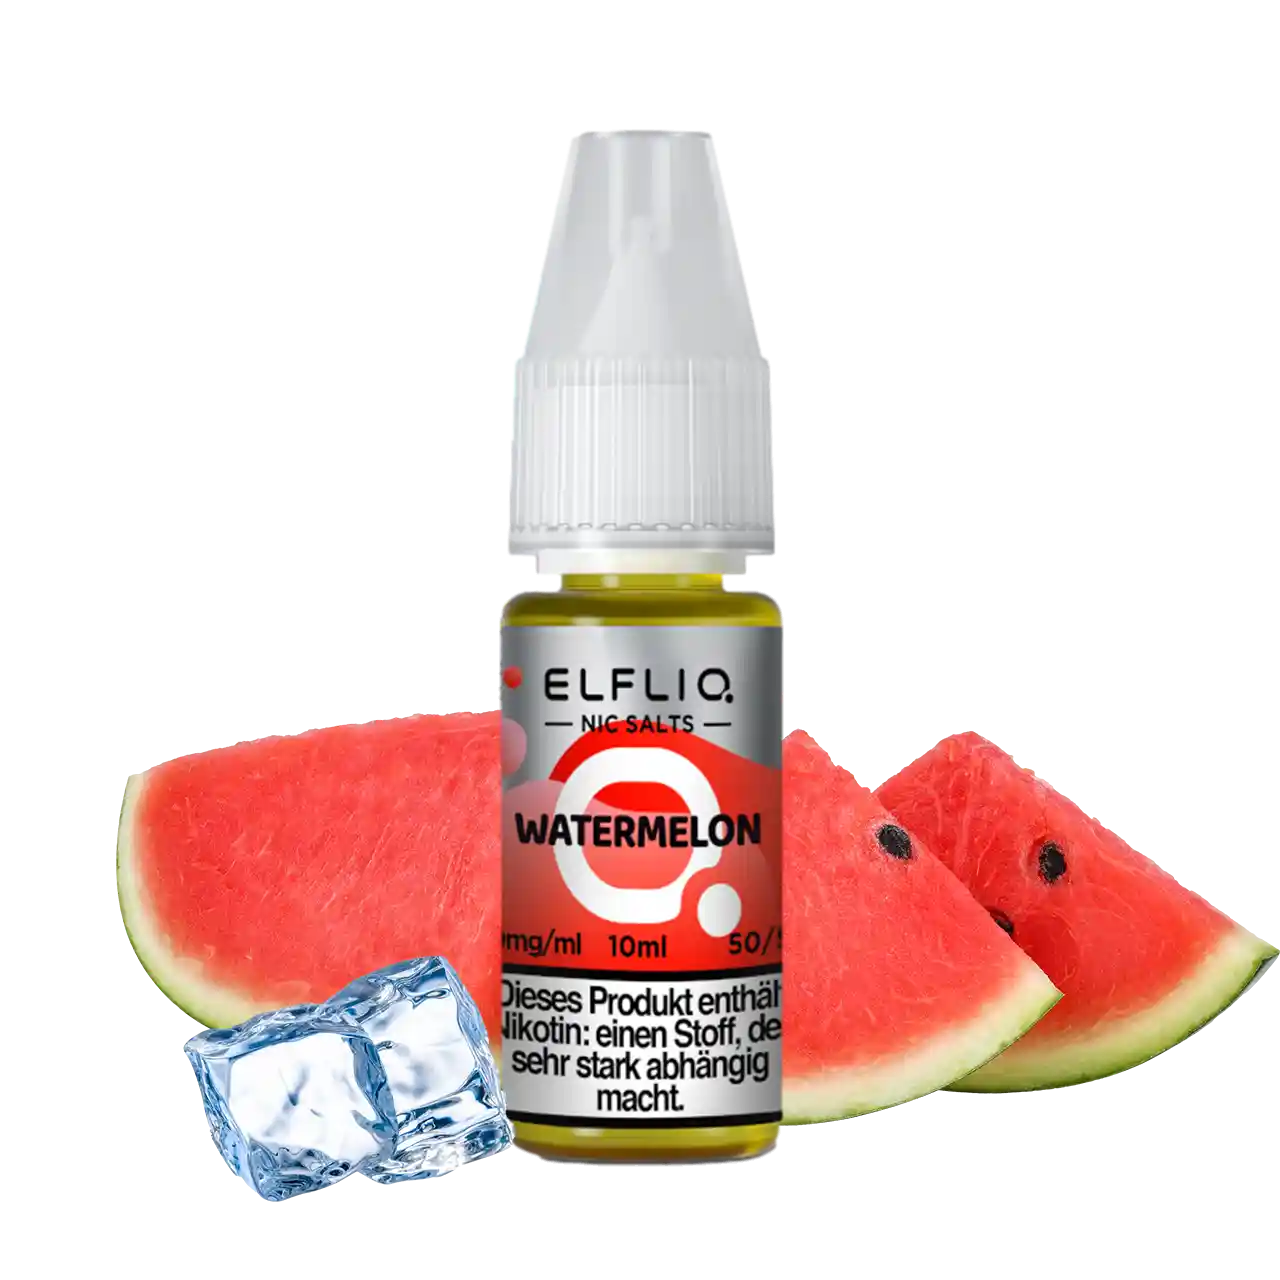 Elfliq Wassermelone Nic Salt Liquid